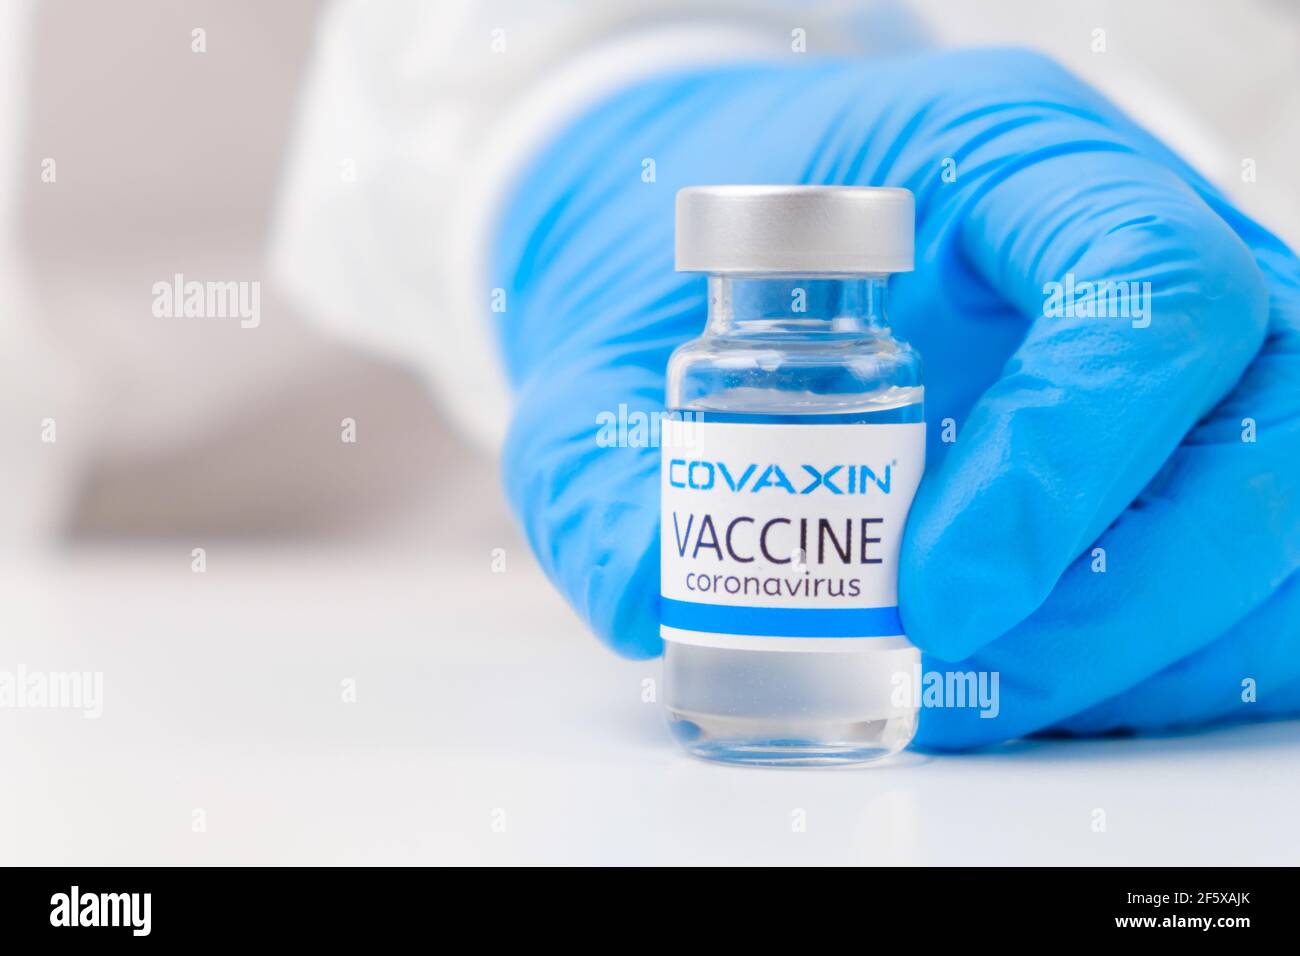 Vaccino di Covaxin contro SARS-Cov-2, coronavirus o Covid-19 messo sul tavolo da un medico nei guanti di gomma. Foto Stock